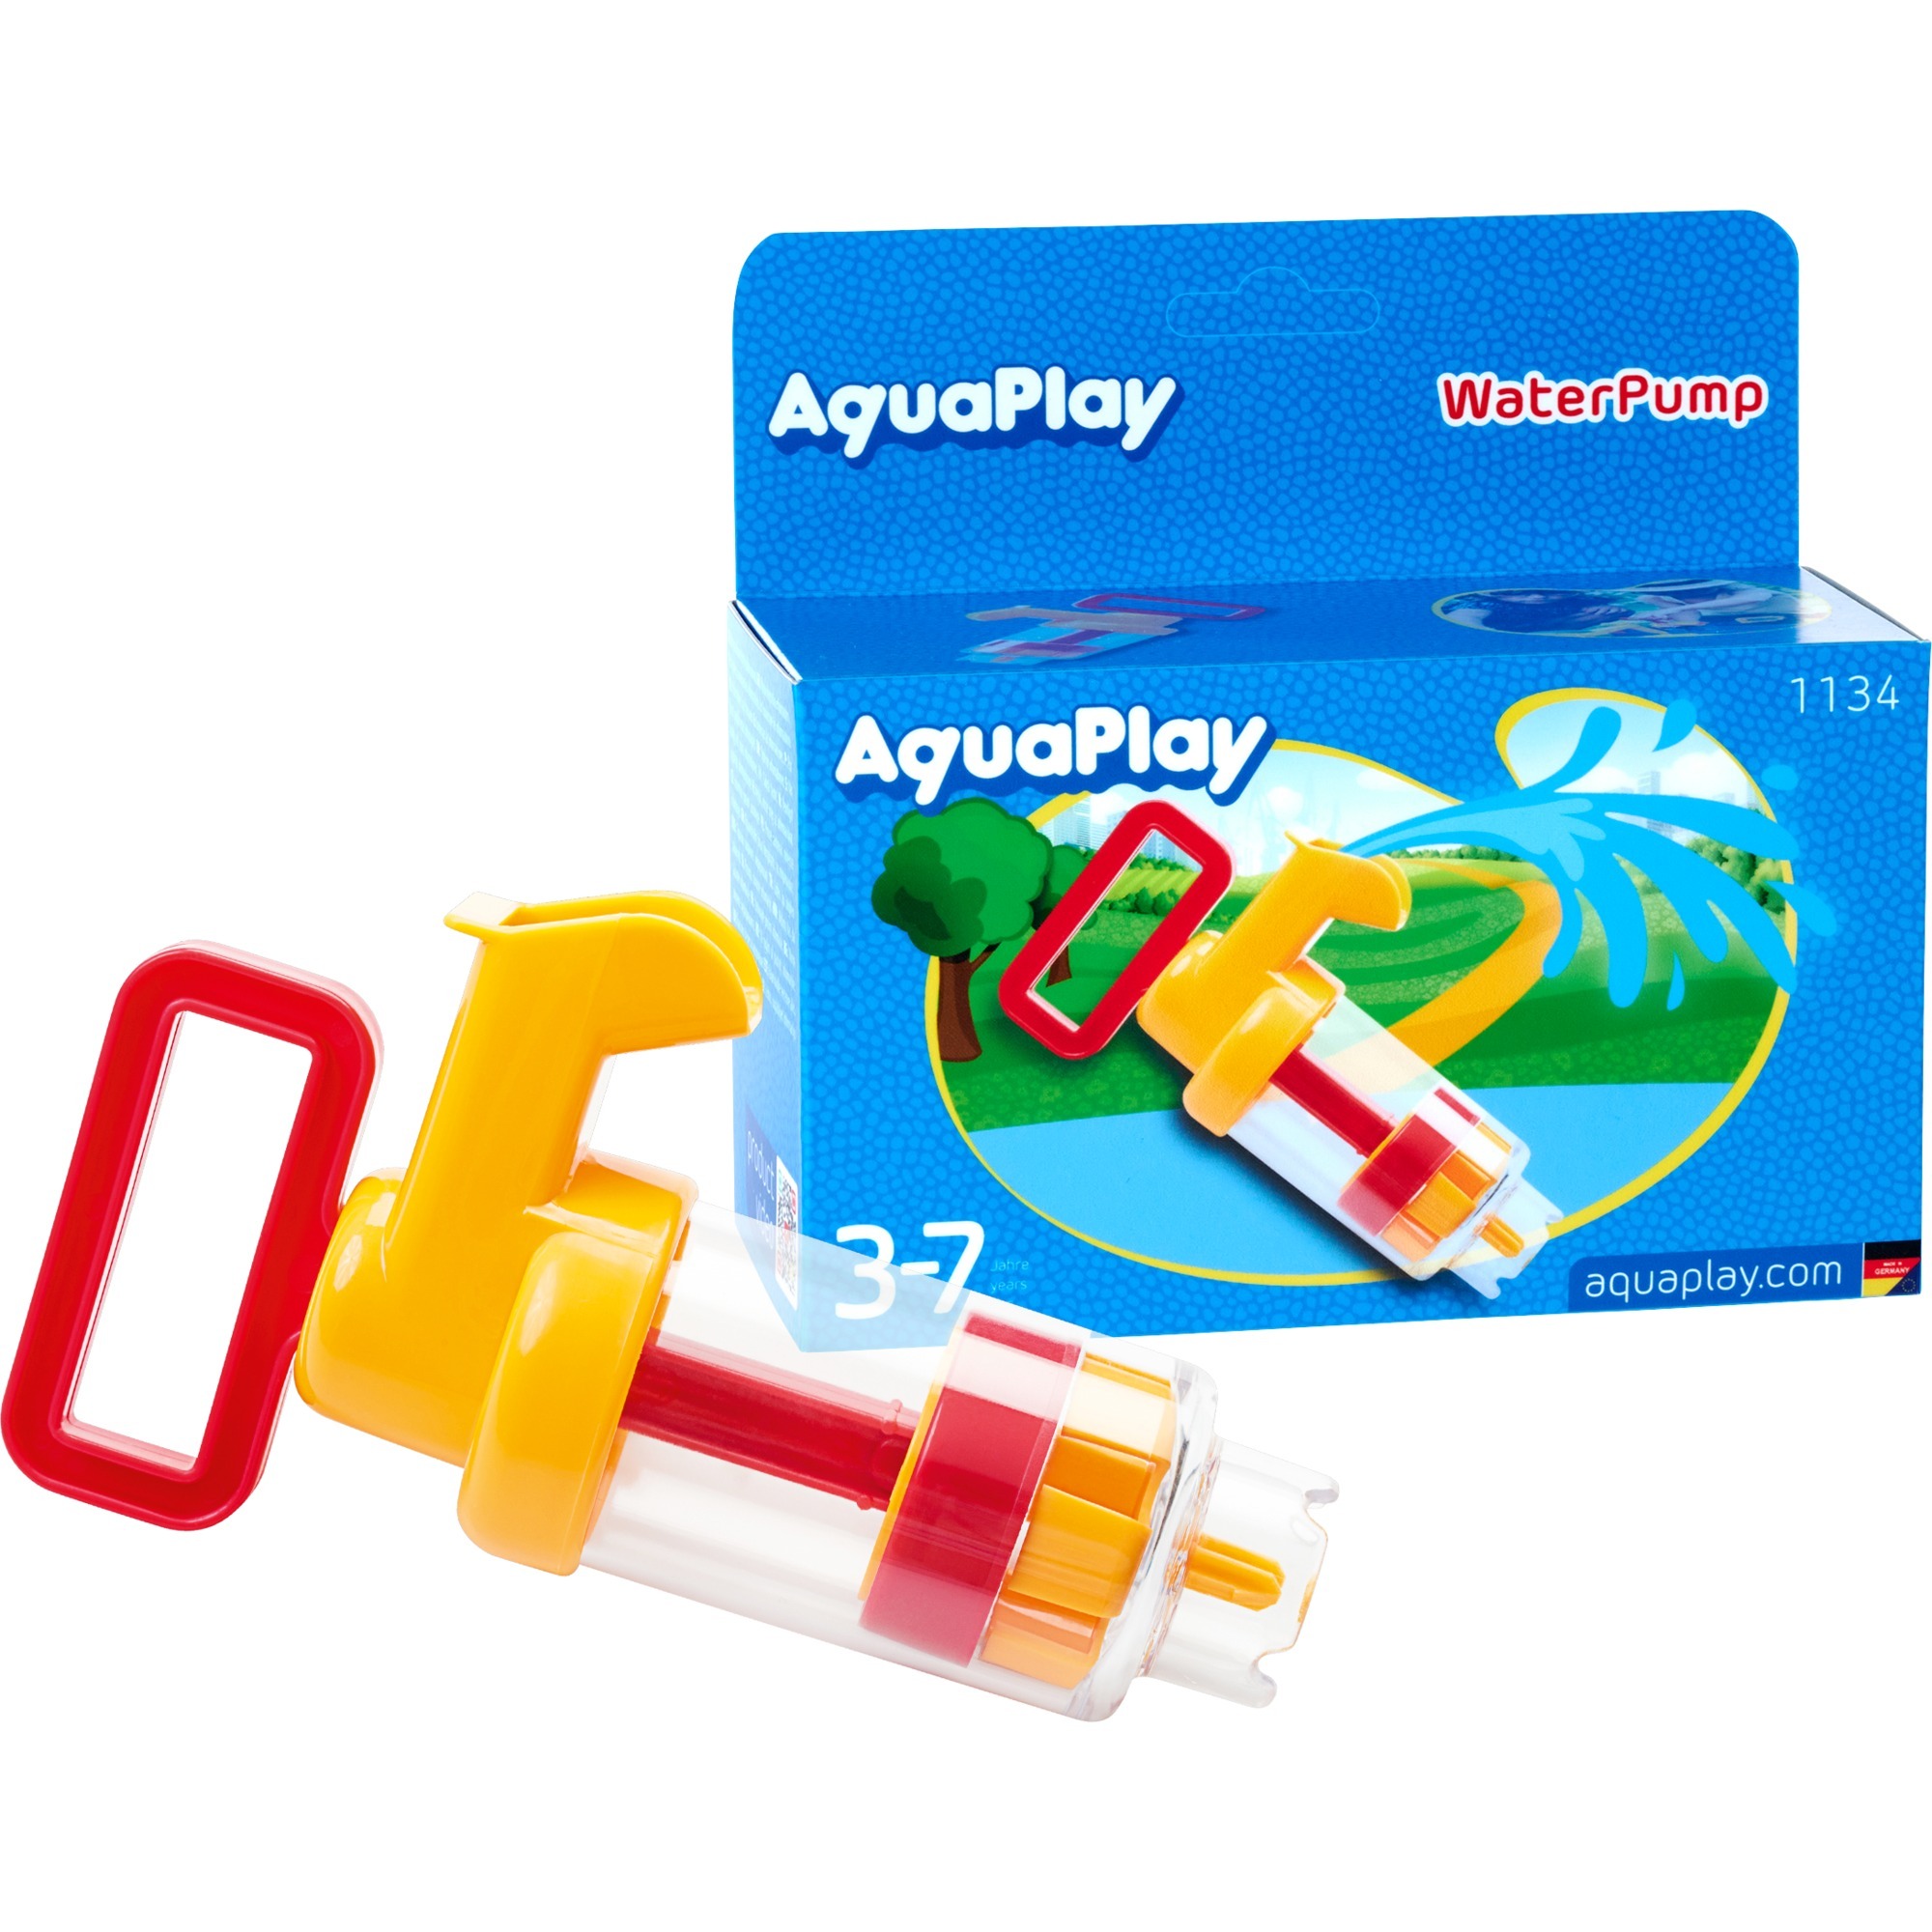 Image of Alternate - Wasserpumpe klein, Wasserspielzeug online einkaufen bei Alternate